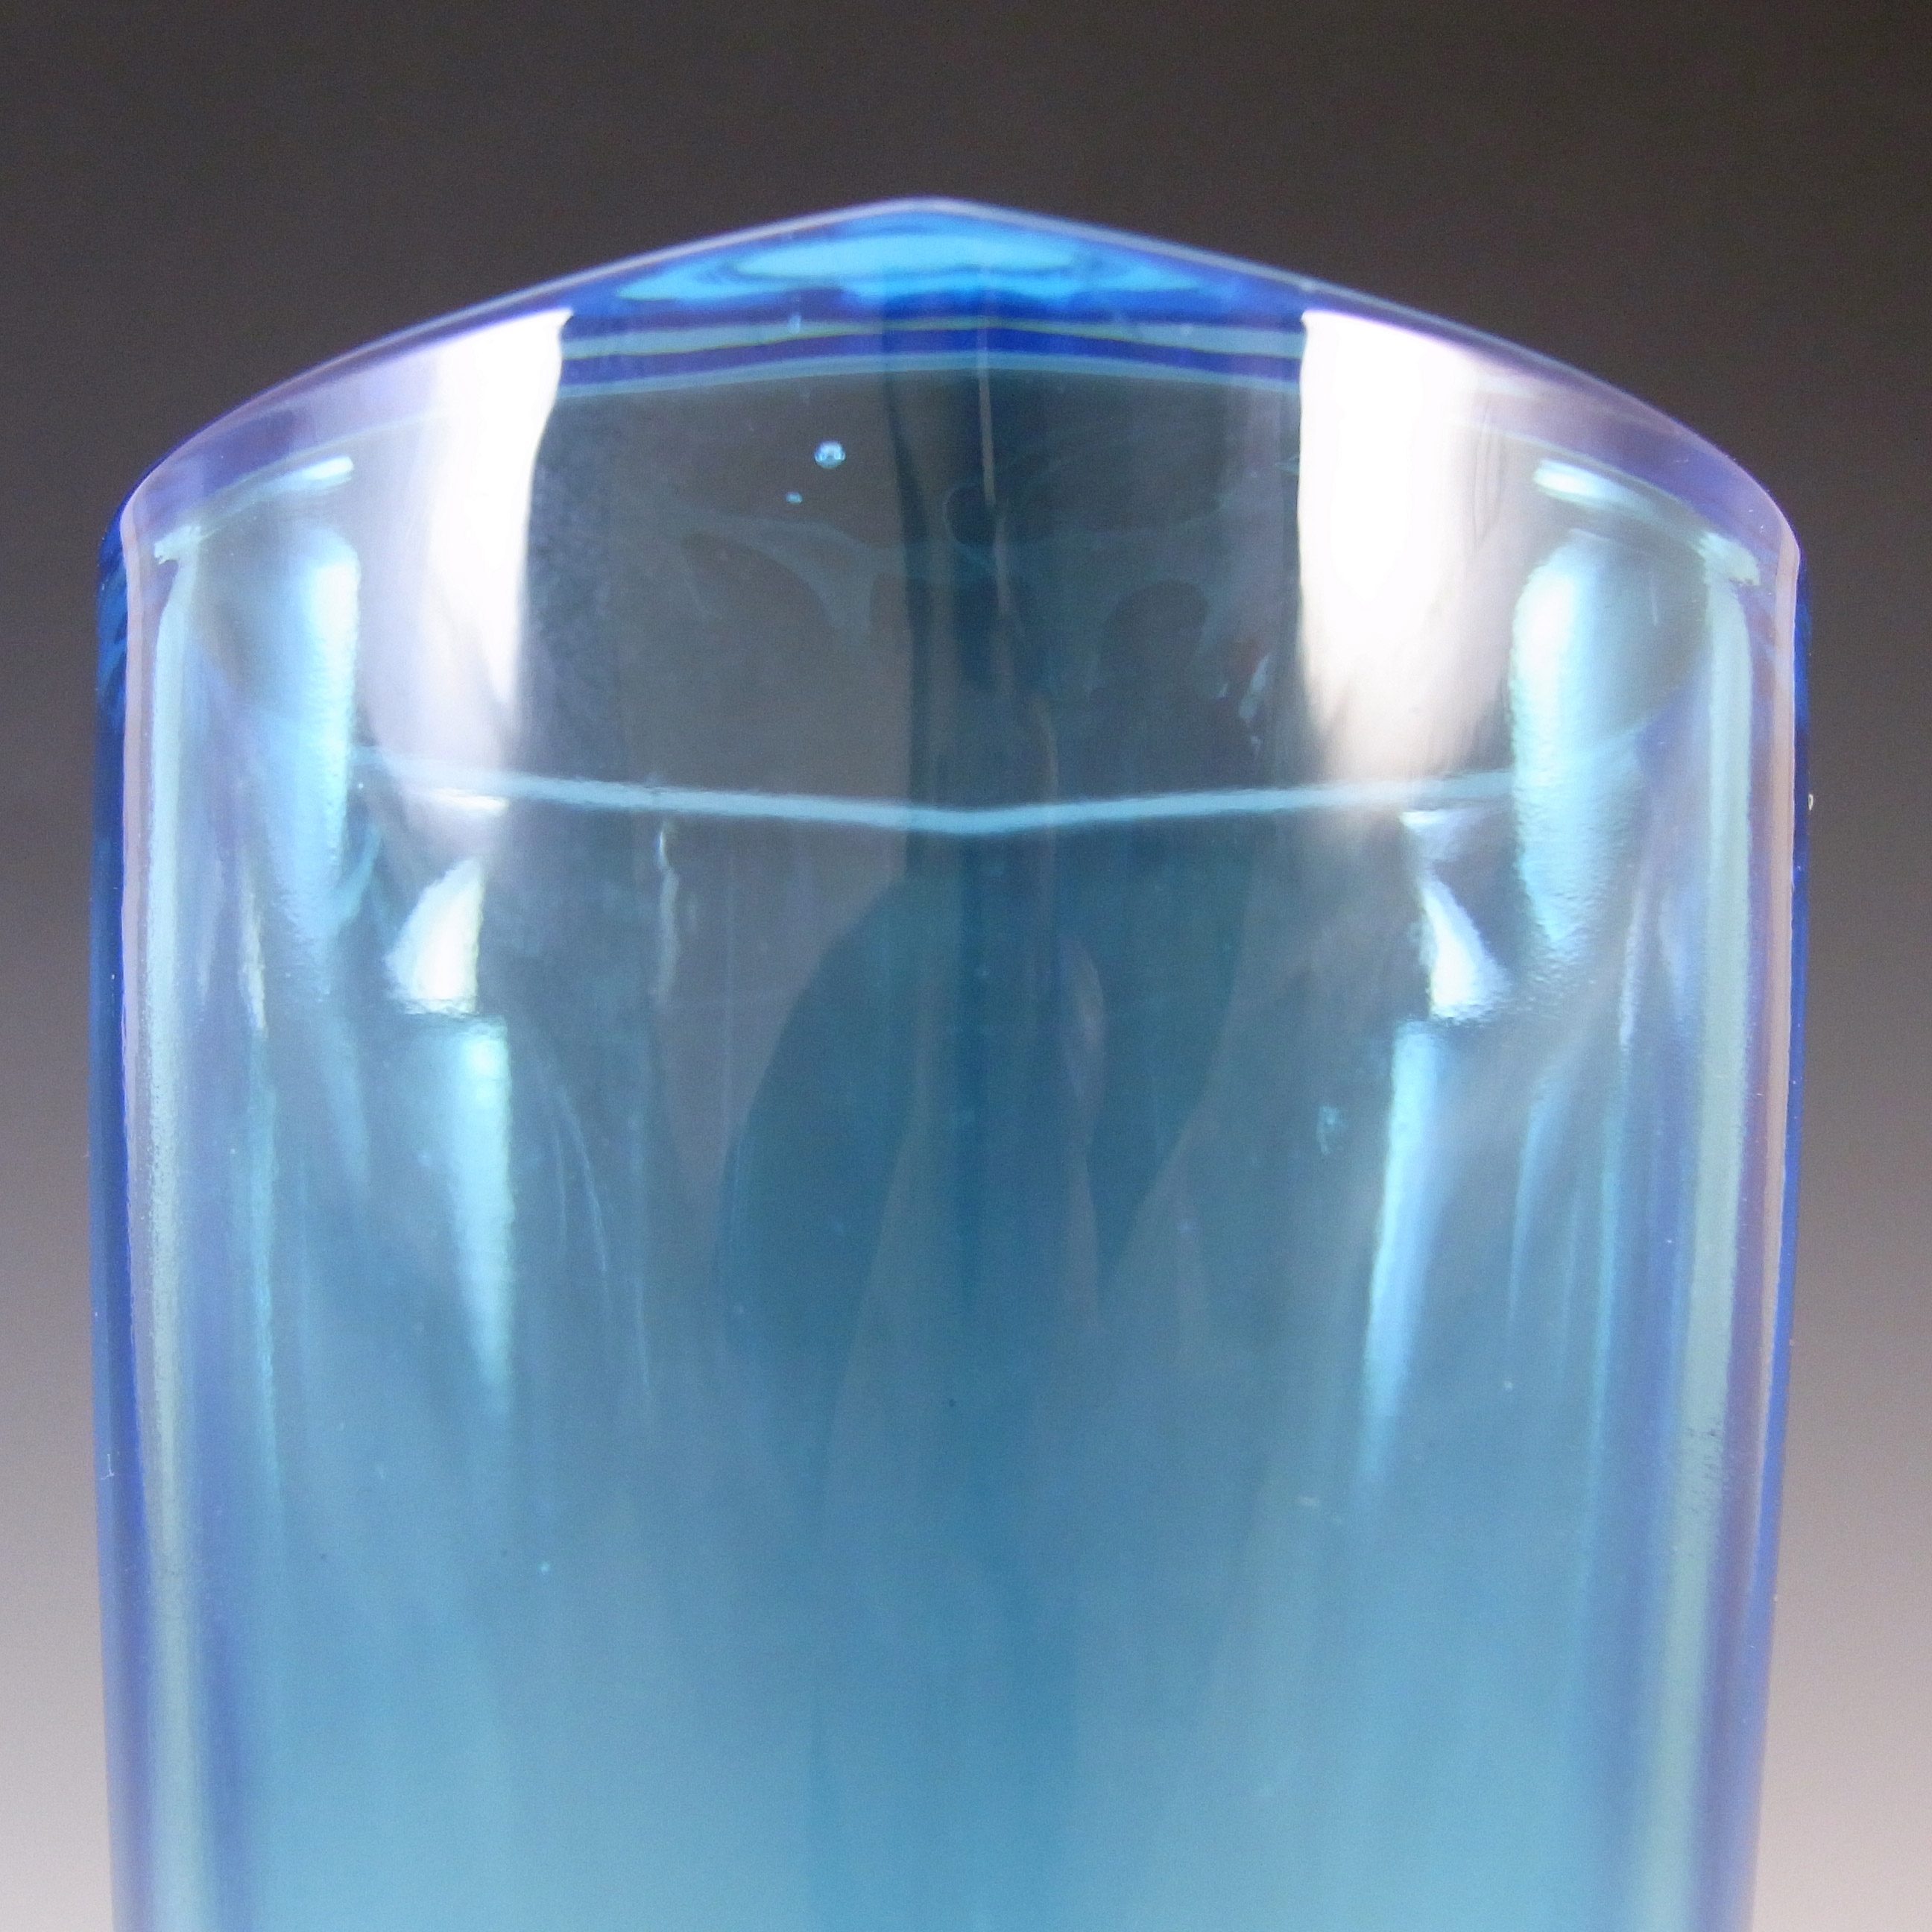 Sklo Union Rudolfova Blue Glass Vase by Václav Hanuš #12996 - Click Image to Close